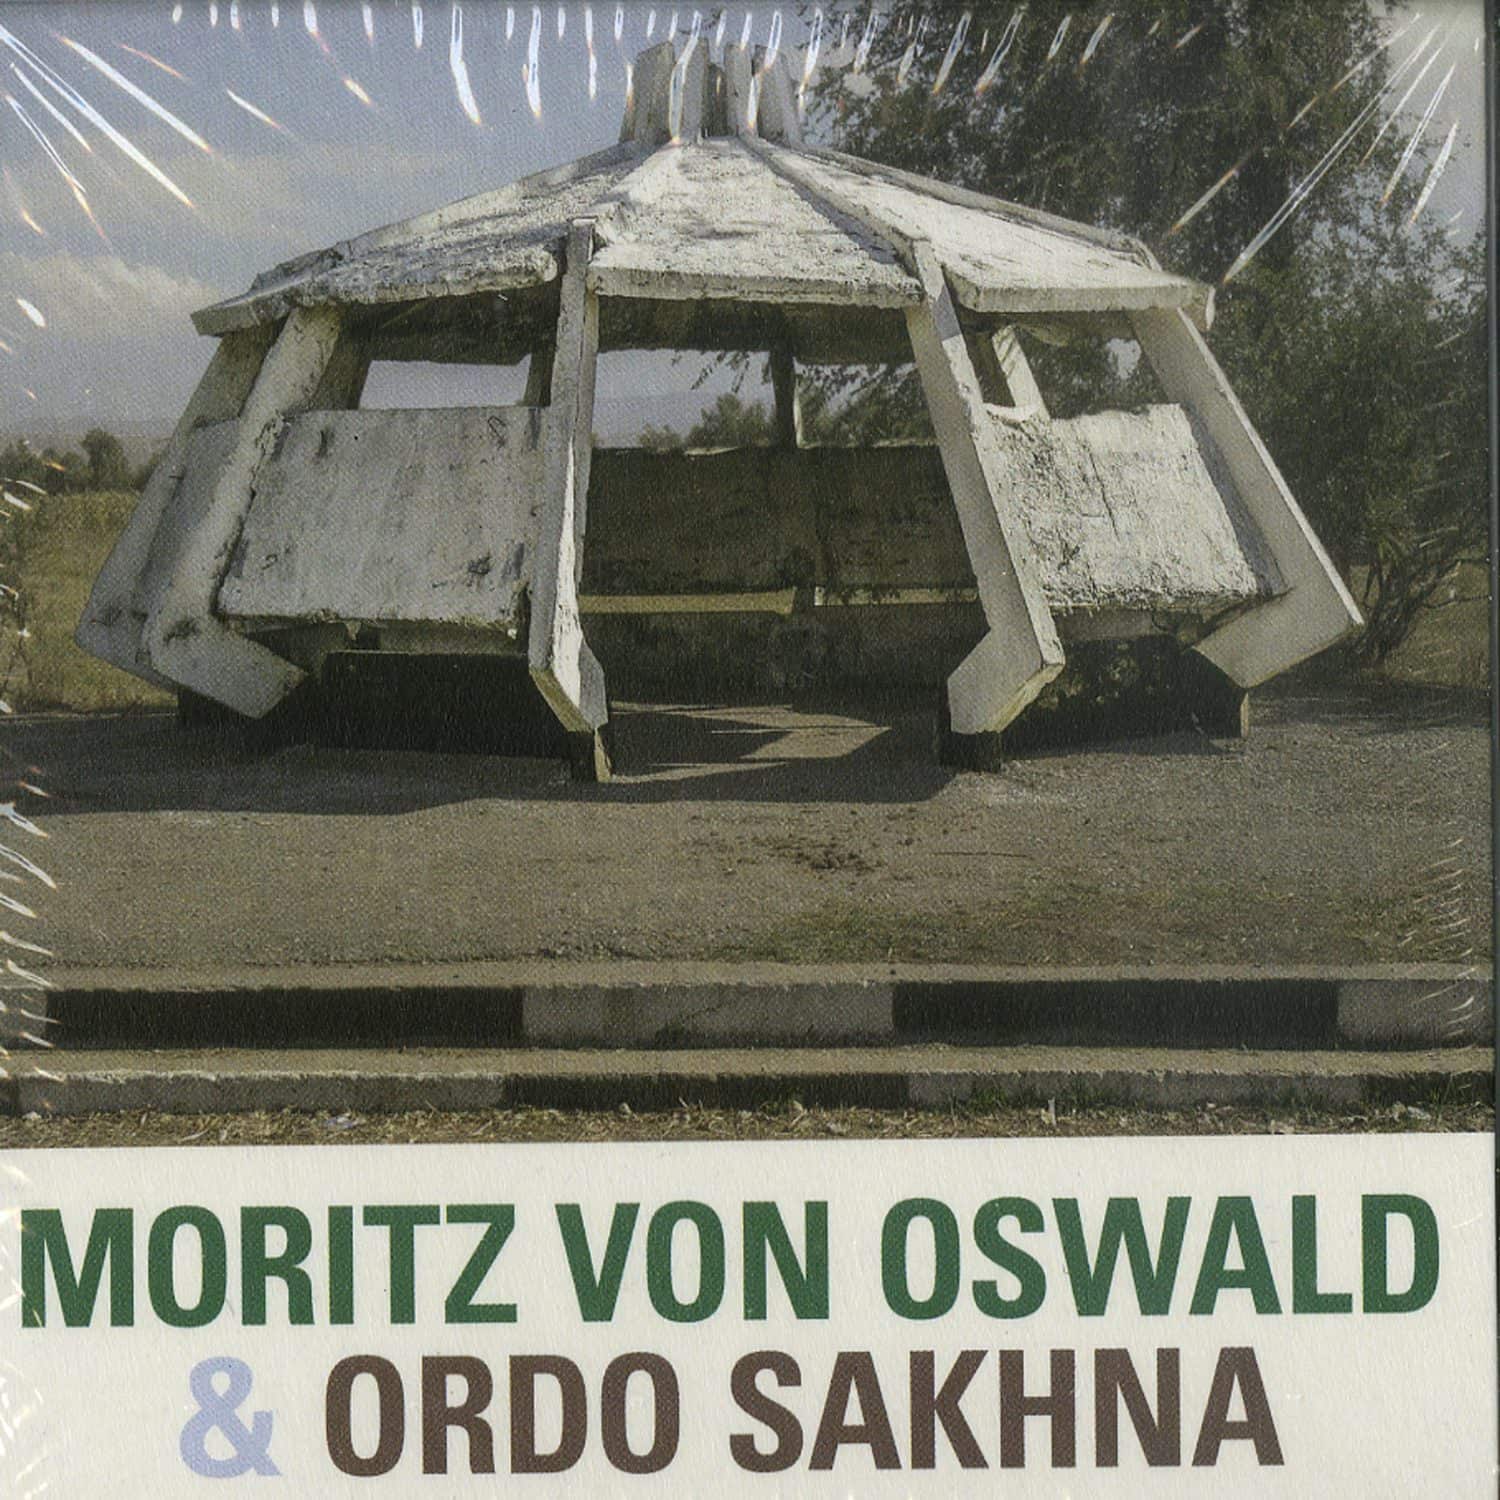 Moritz Von Oswald & Ordo Sakhna - MORITZ VON OSWALD & ORDO SAKHNA 